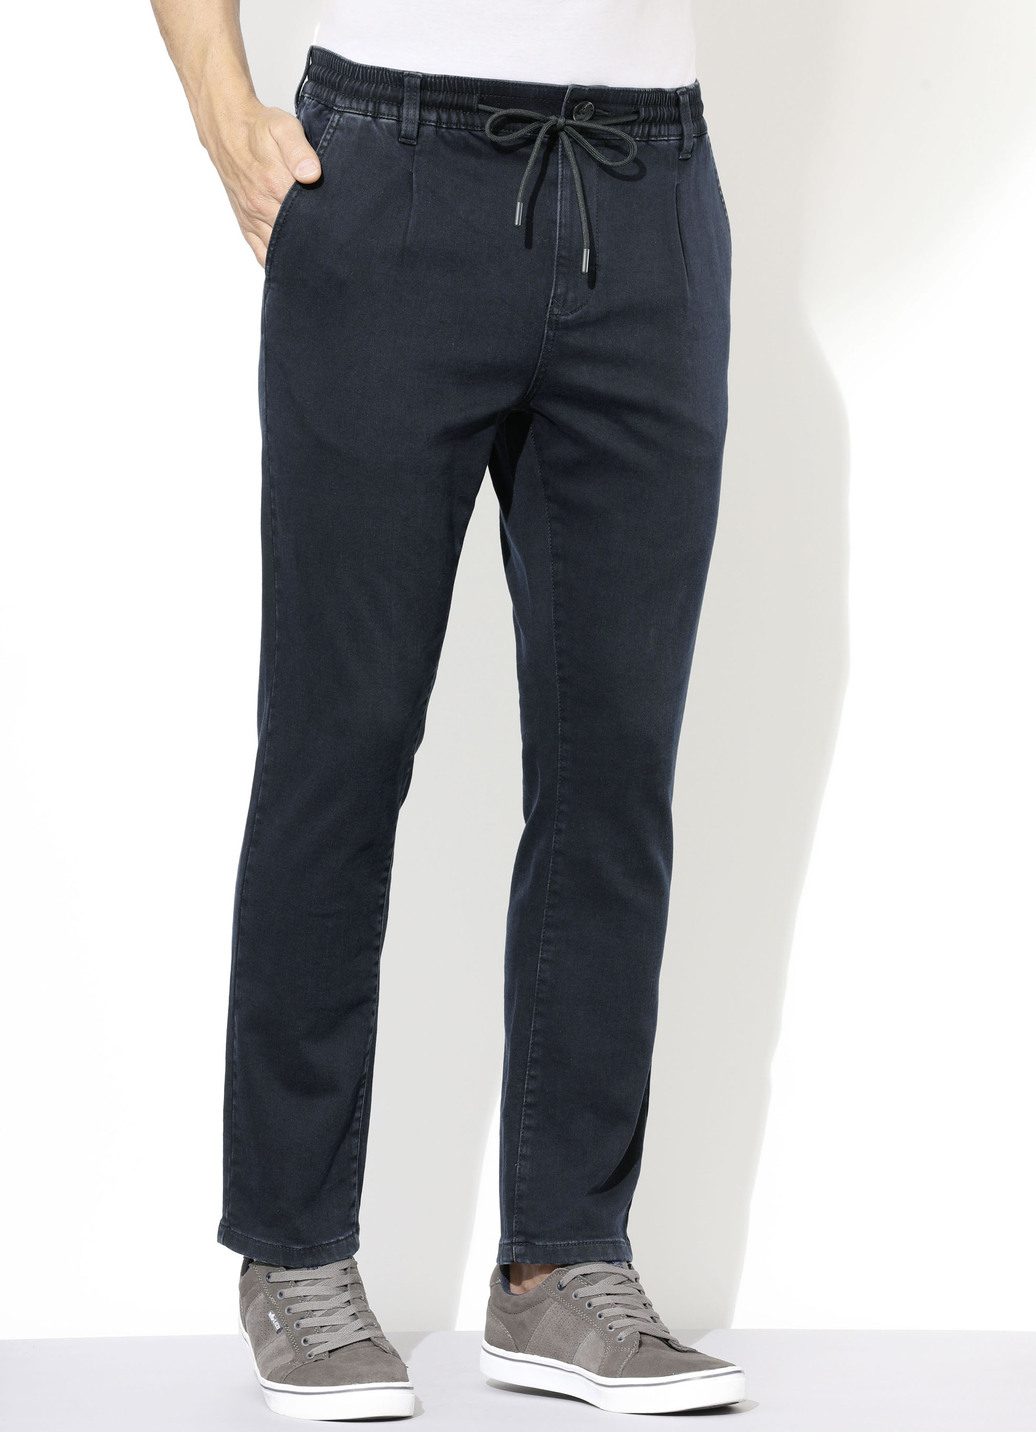 Superstretch-Jeans in 3 Farben, Dunkelblau, Größe 28 von DANNECKER